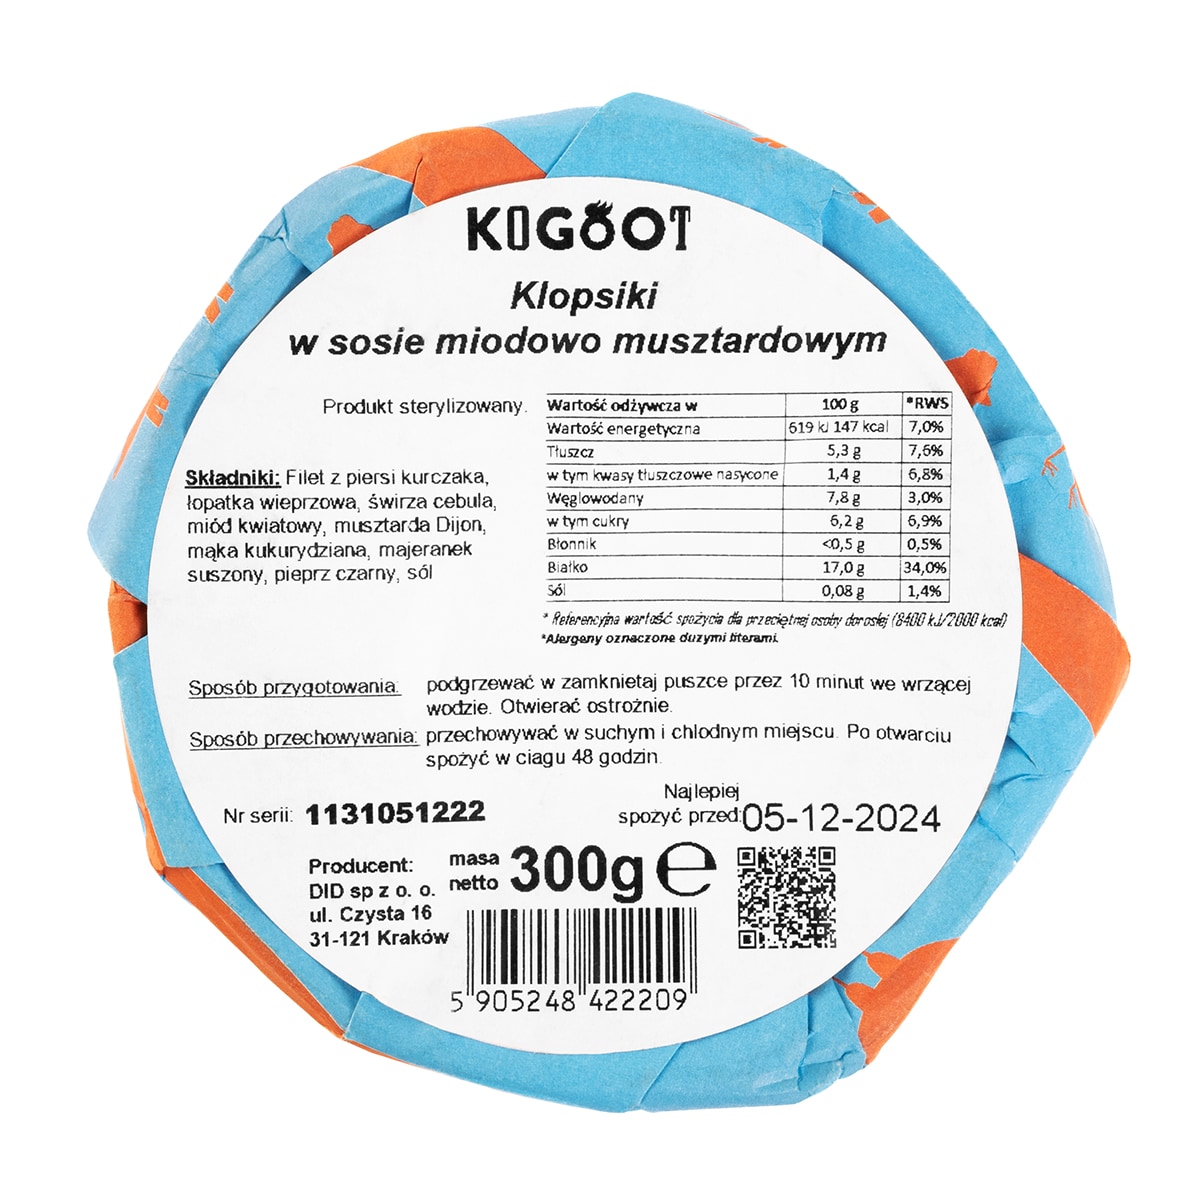 Консервовані продукти Kogoot - Фрикадельки в гірчично-медовому соусі 300 г